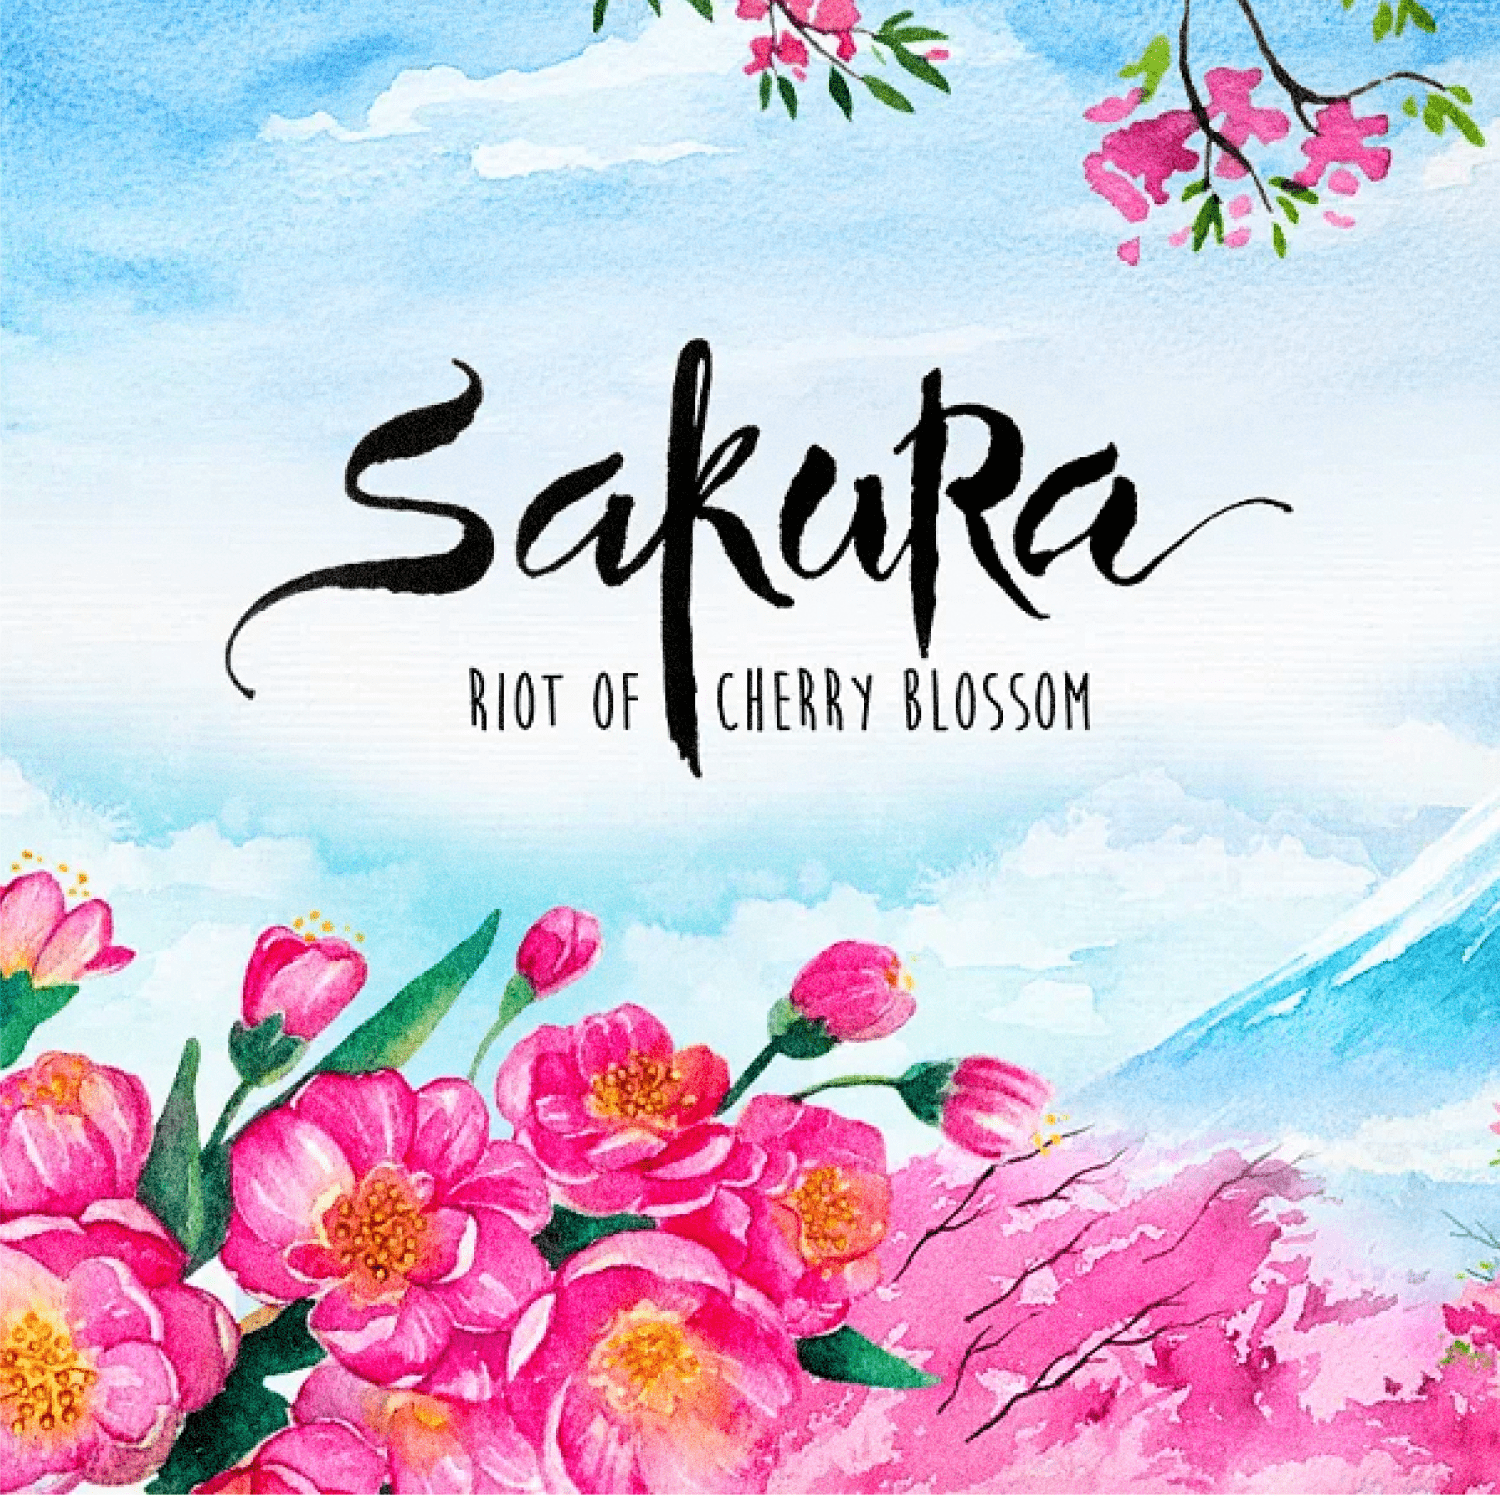 Sakura. riot of cherry blossom - main image preview.